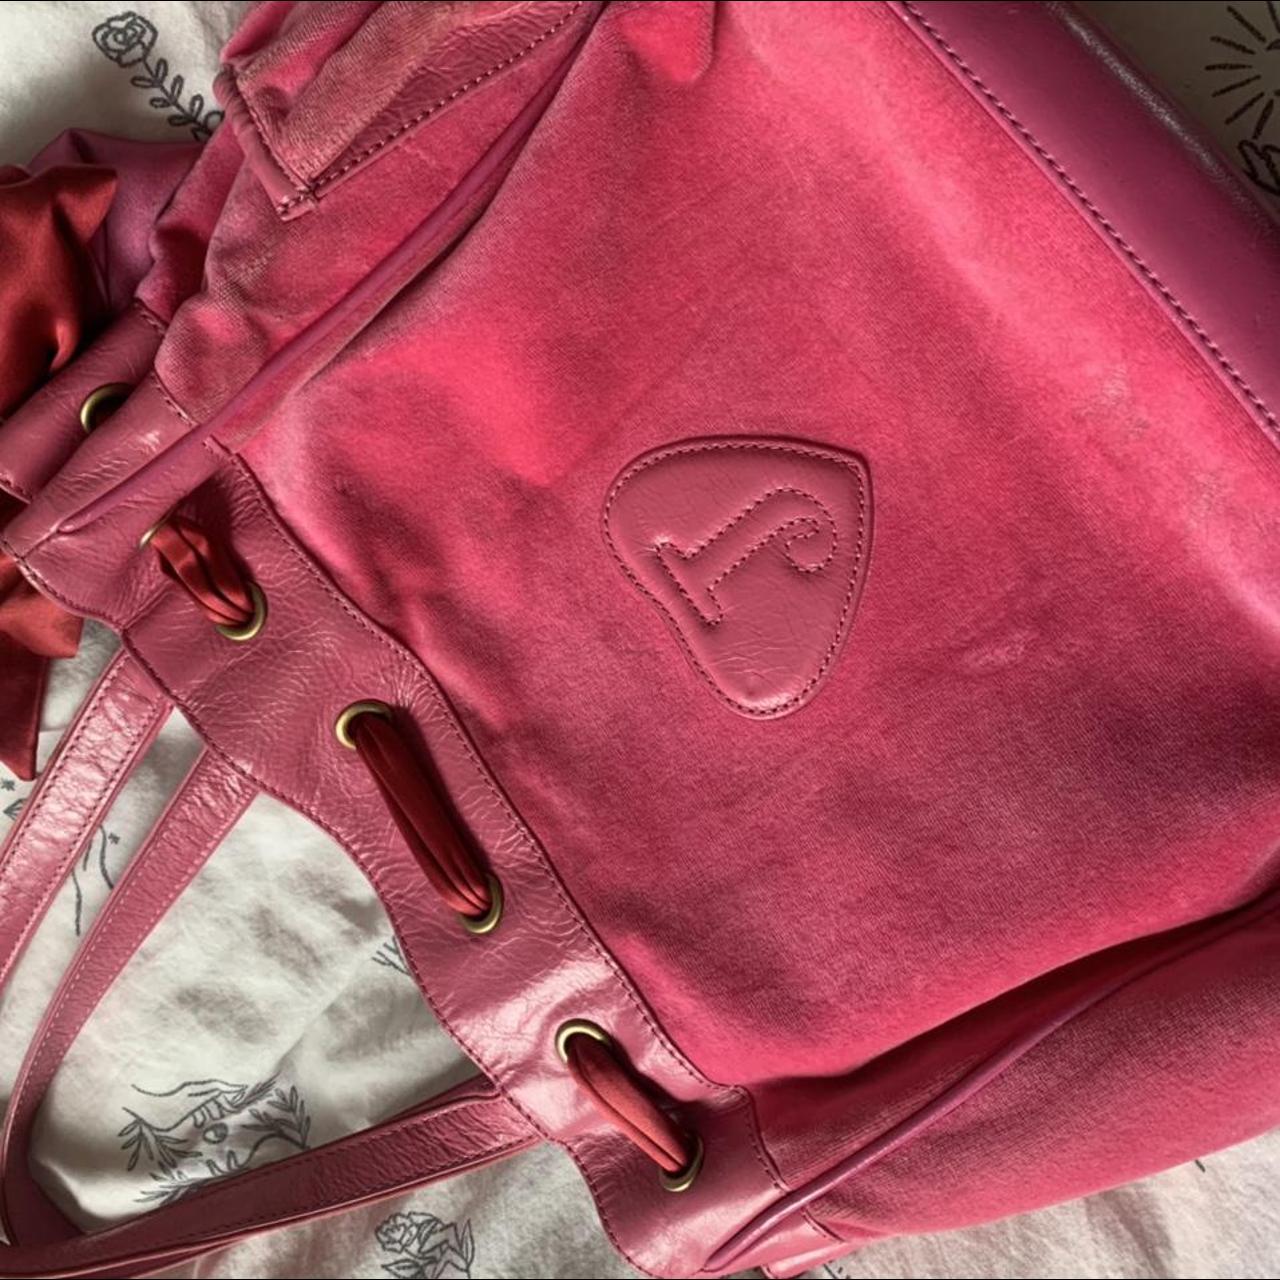 WANT SOLD Pink vintage juicy couture shoulder bag - Depop